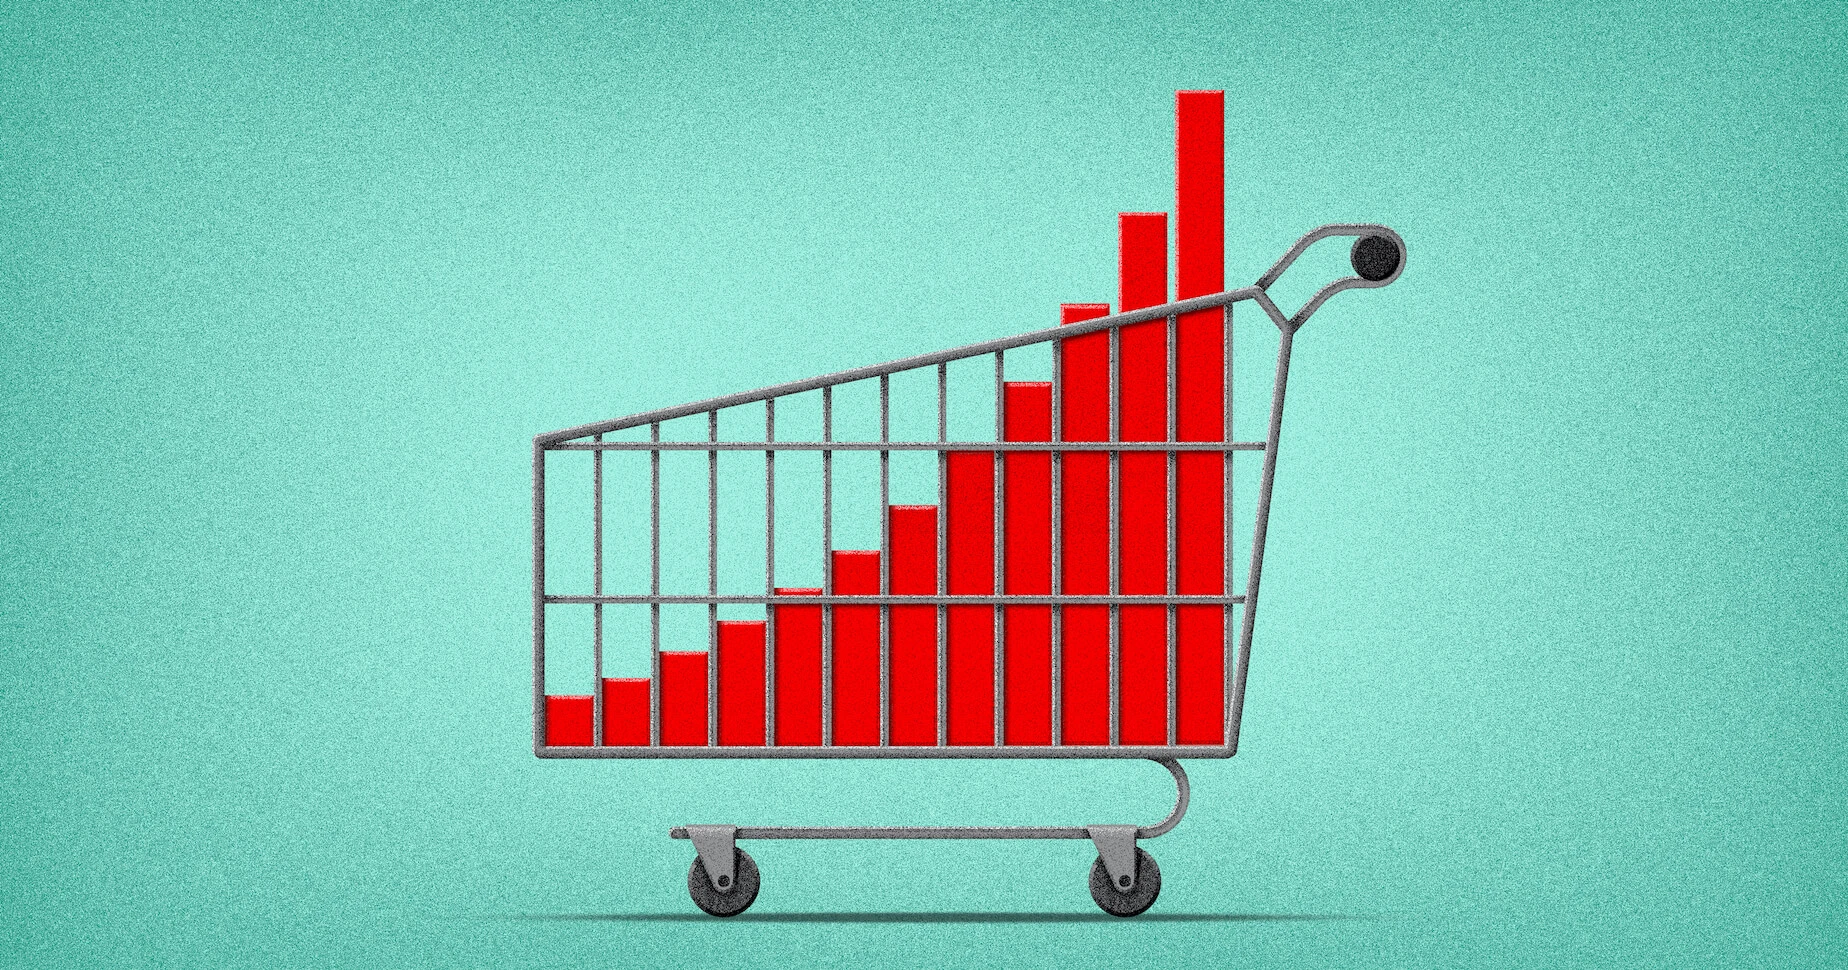 shopping cart and an upward chart